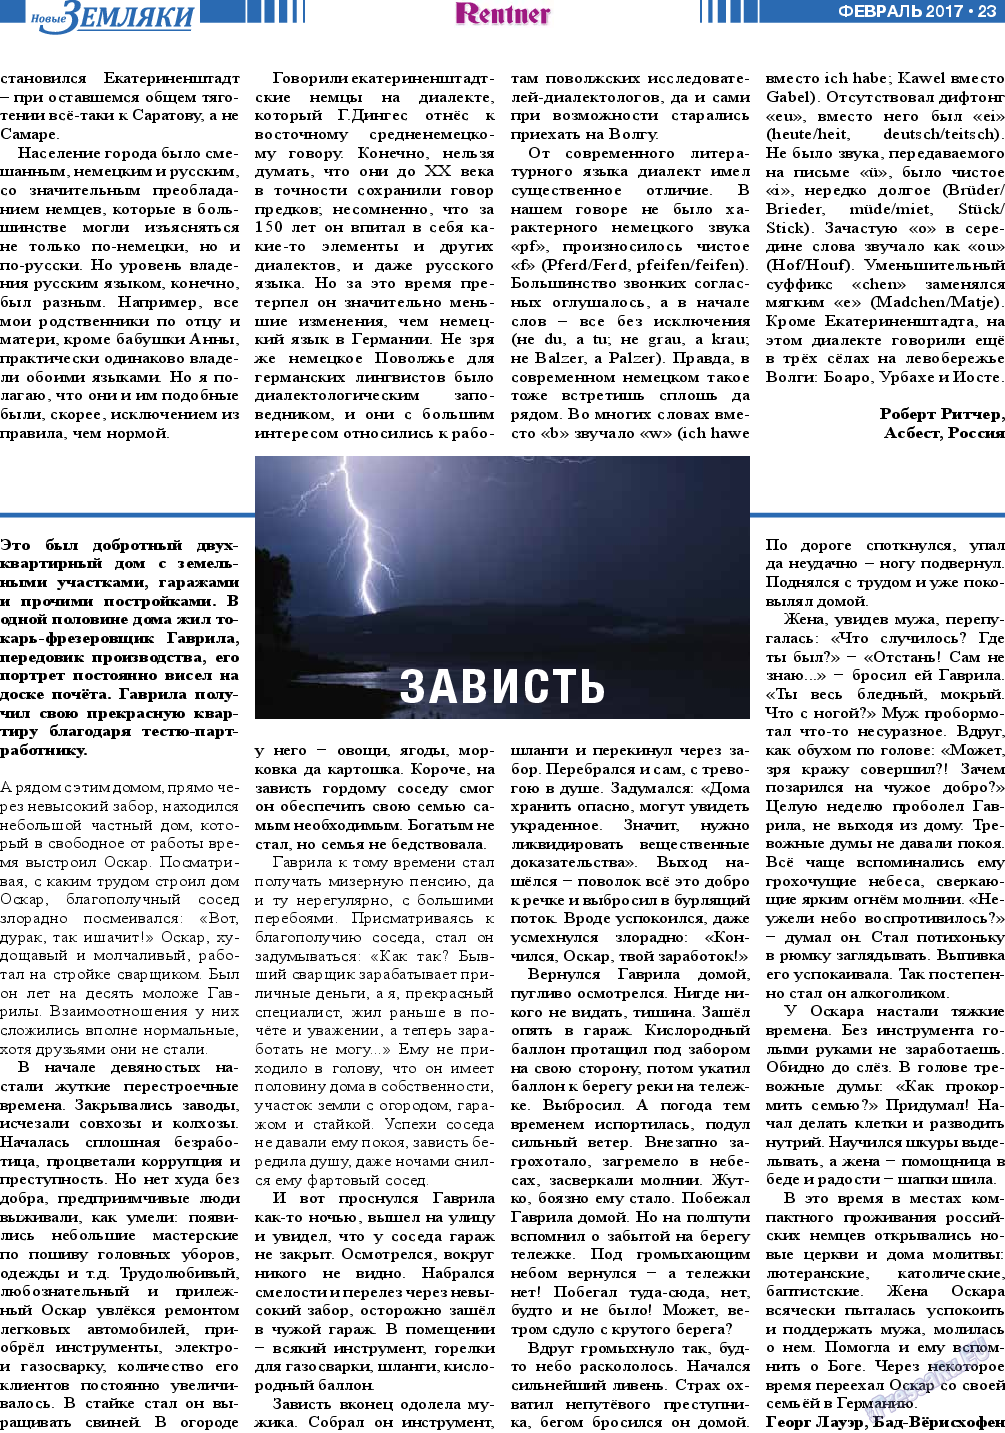 Новые Земляки, газета. 2017 №2 стр.23